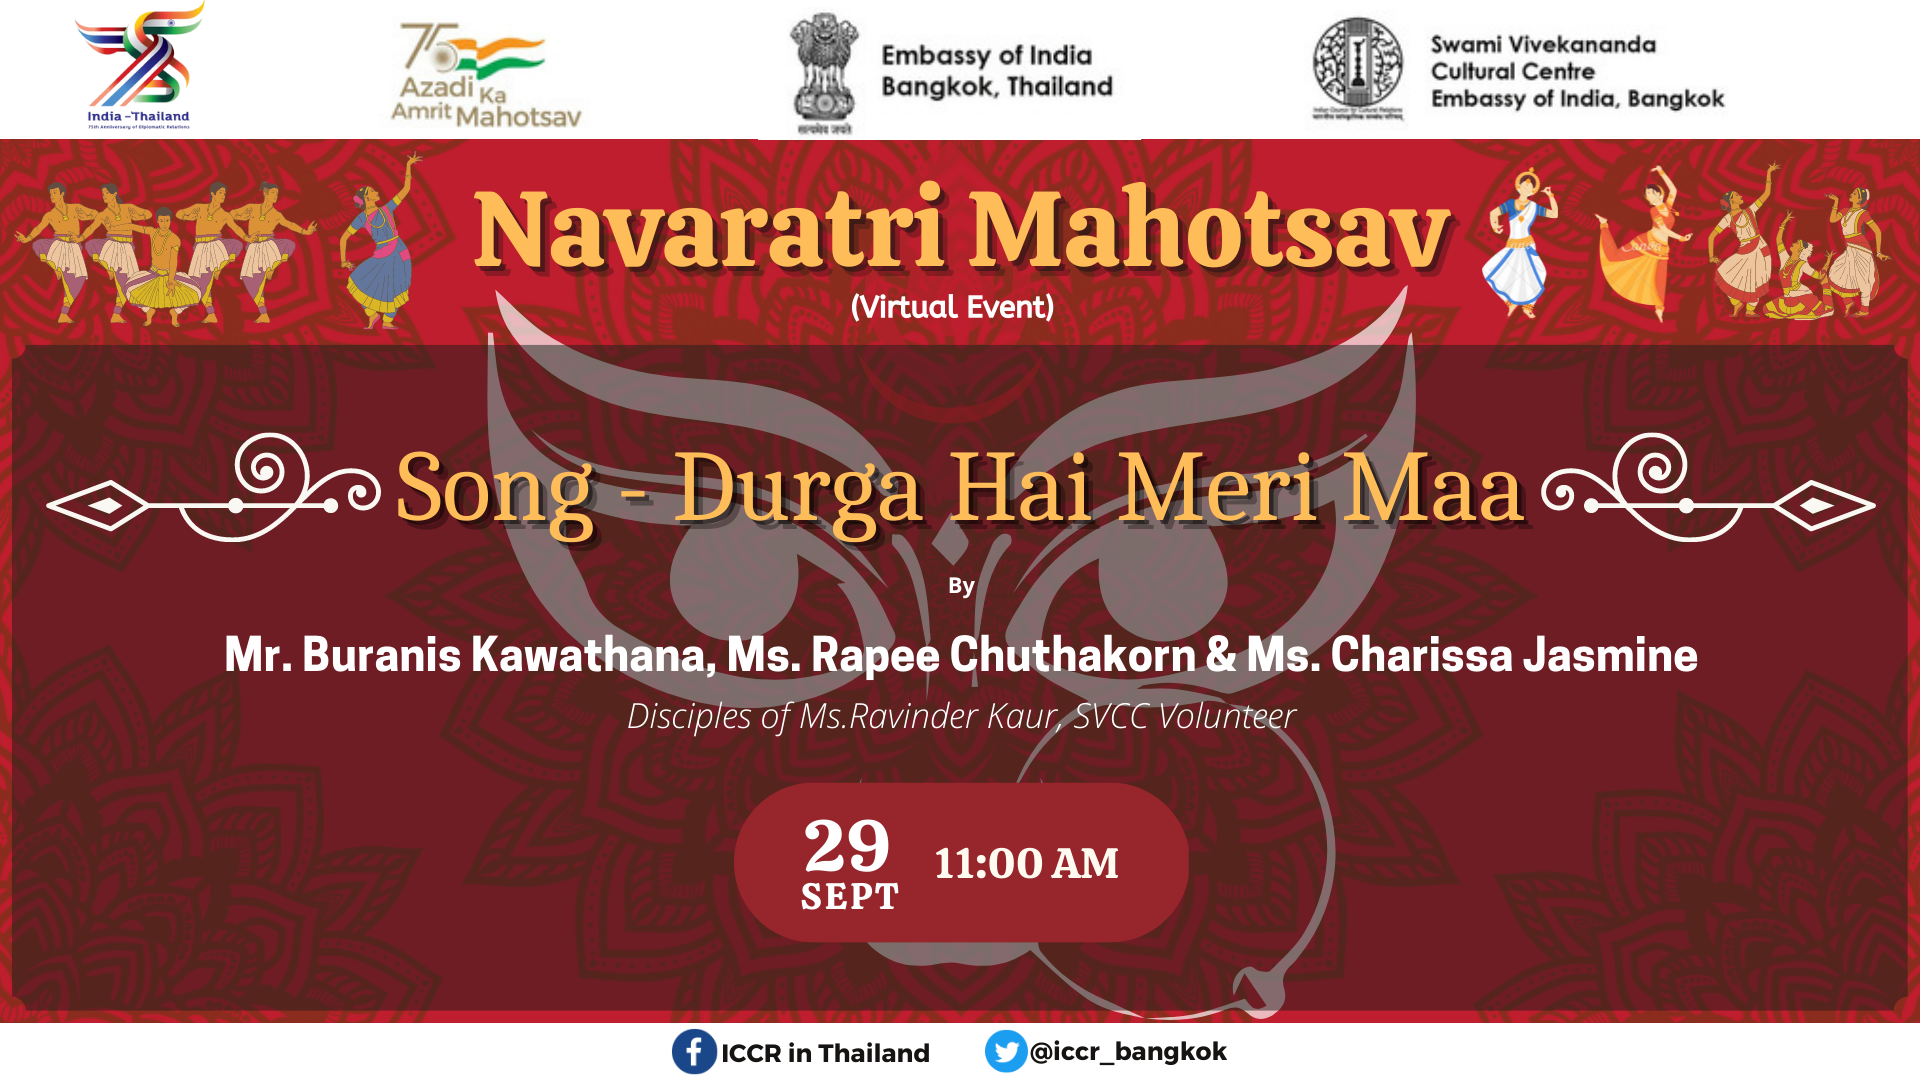 एसवीसीसी का कार्यक्रम - नवरात्रि के दिन 4 - नवरात्रि के दिन 4 - श्री बुरानीस कवाथाना, सुश्री रेपी चुथाकोर्न और सुश्री चरिसा जैस्मीन, एसवीसीसी छात्रों और सुश्री रविंदर कौर की शिष्याओं द्वारा दुर्गा है मेरी मां